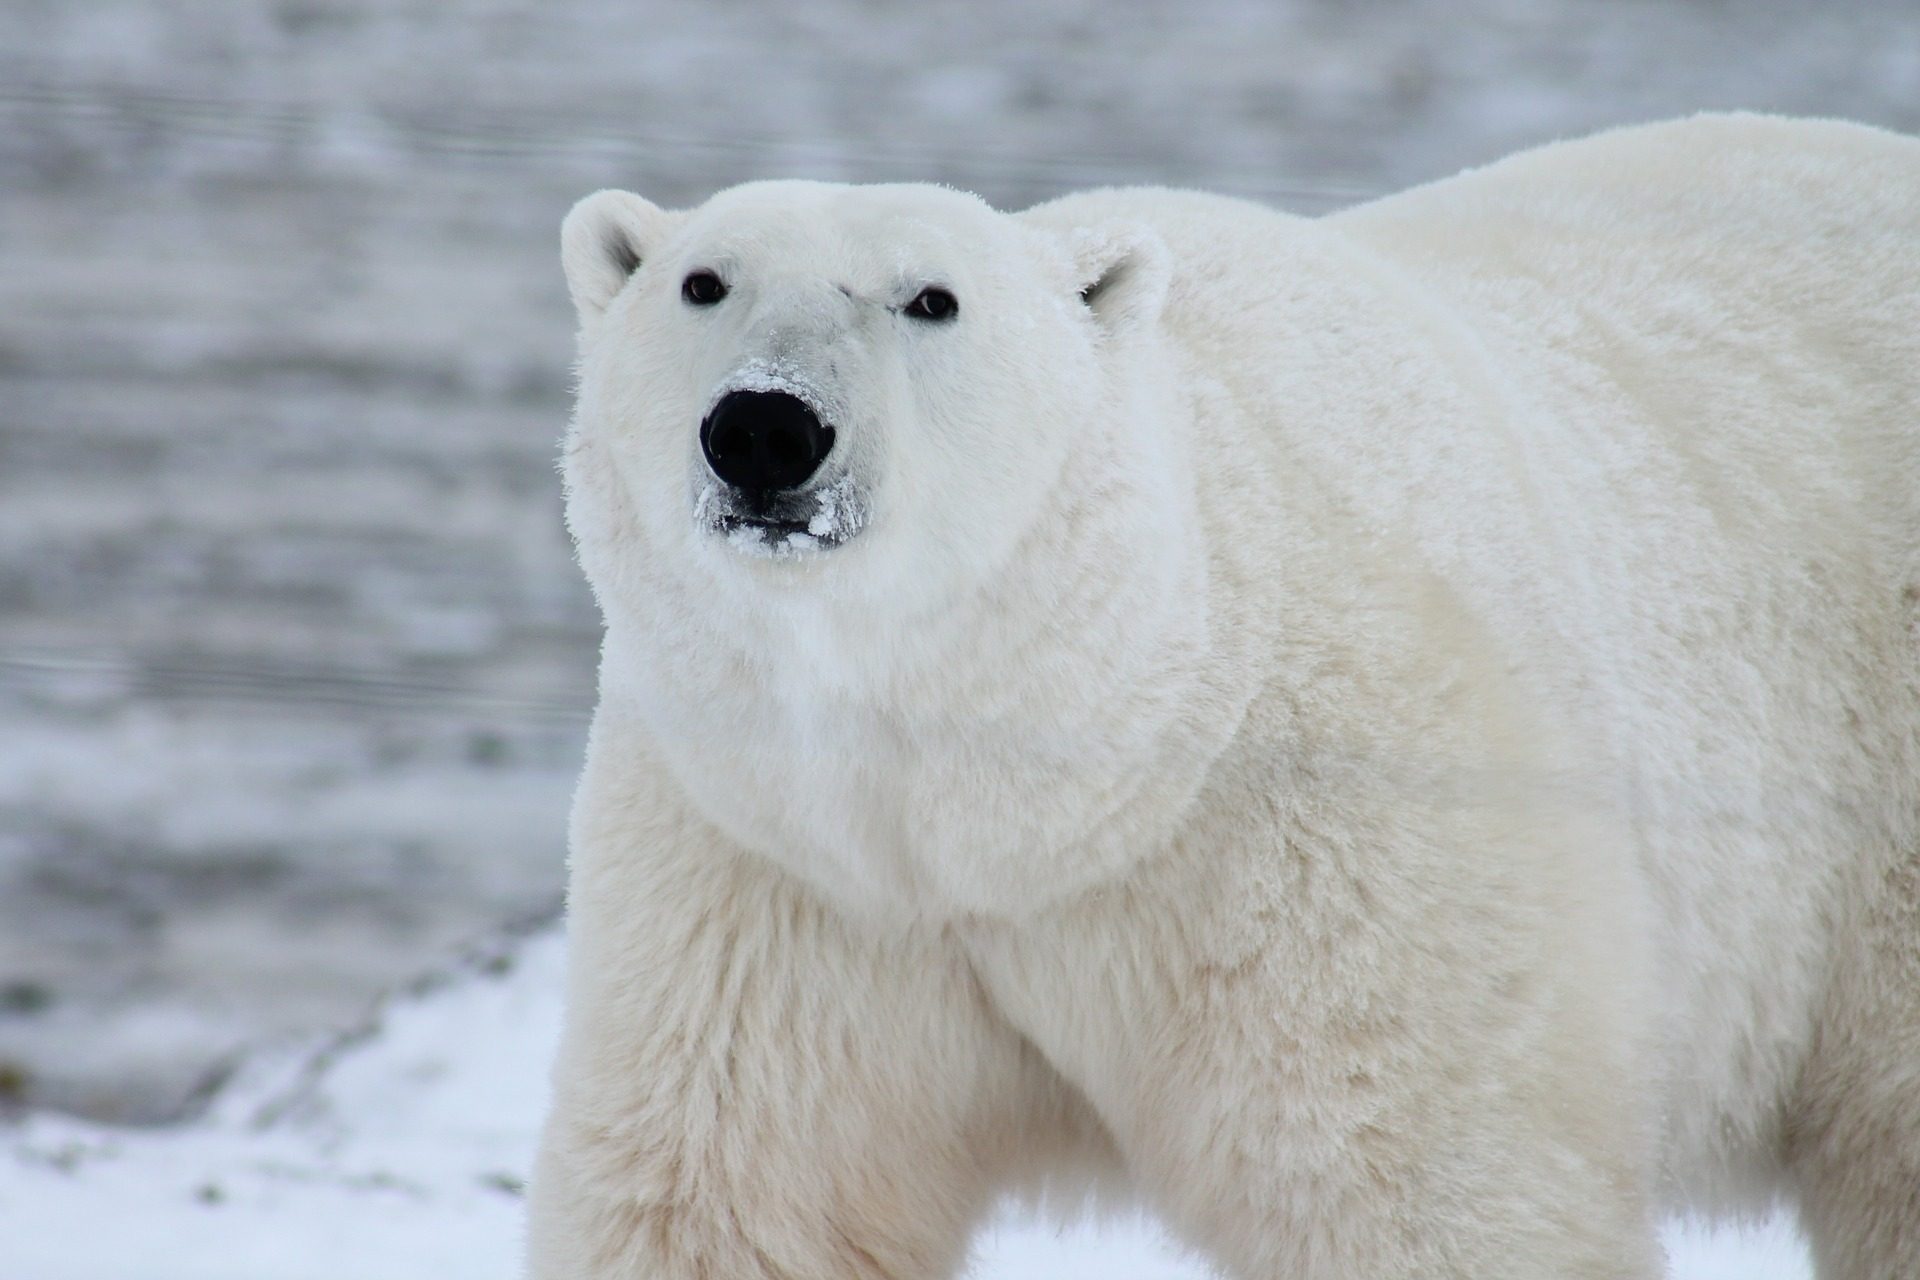 zima quiz wiedzy geografia narty sezon zimowy grudzień styczeń luty święta boże narodzenie test niedźwiedź polarny miś zwierzęta